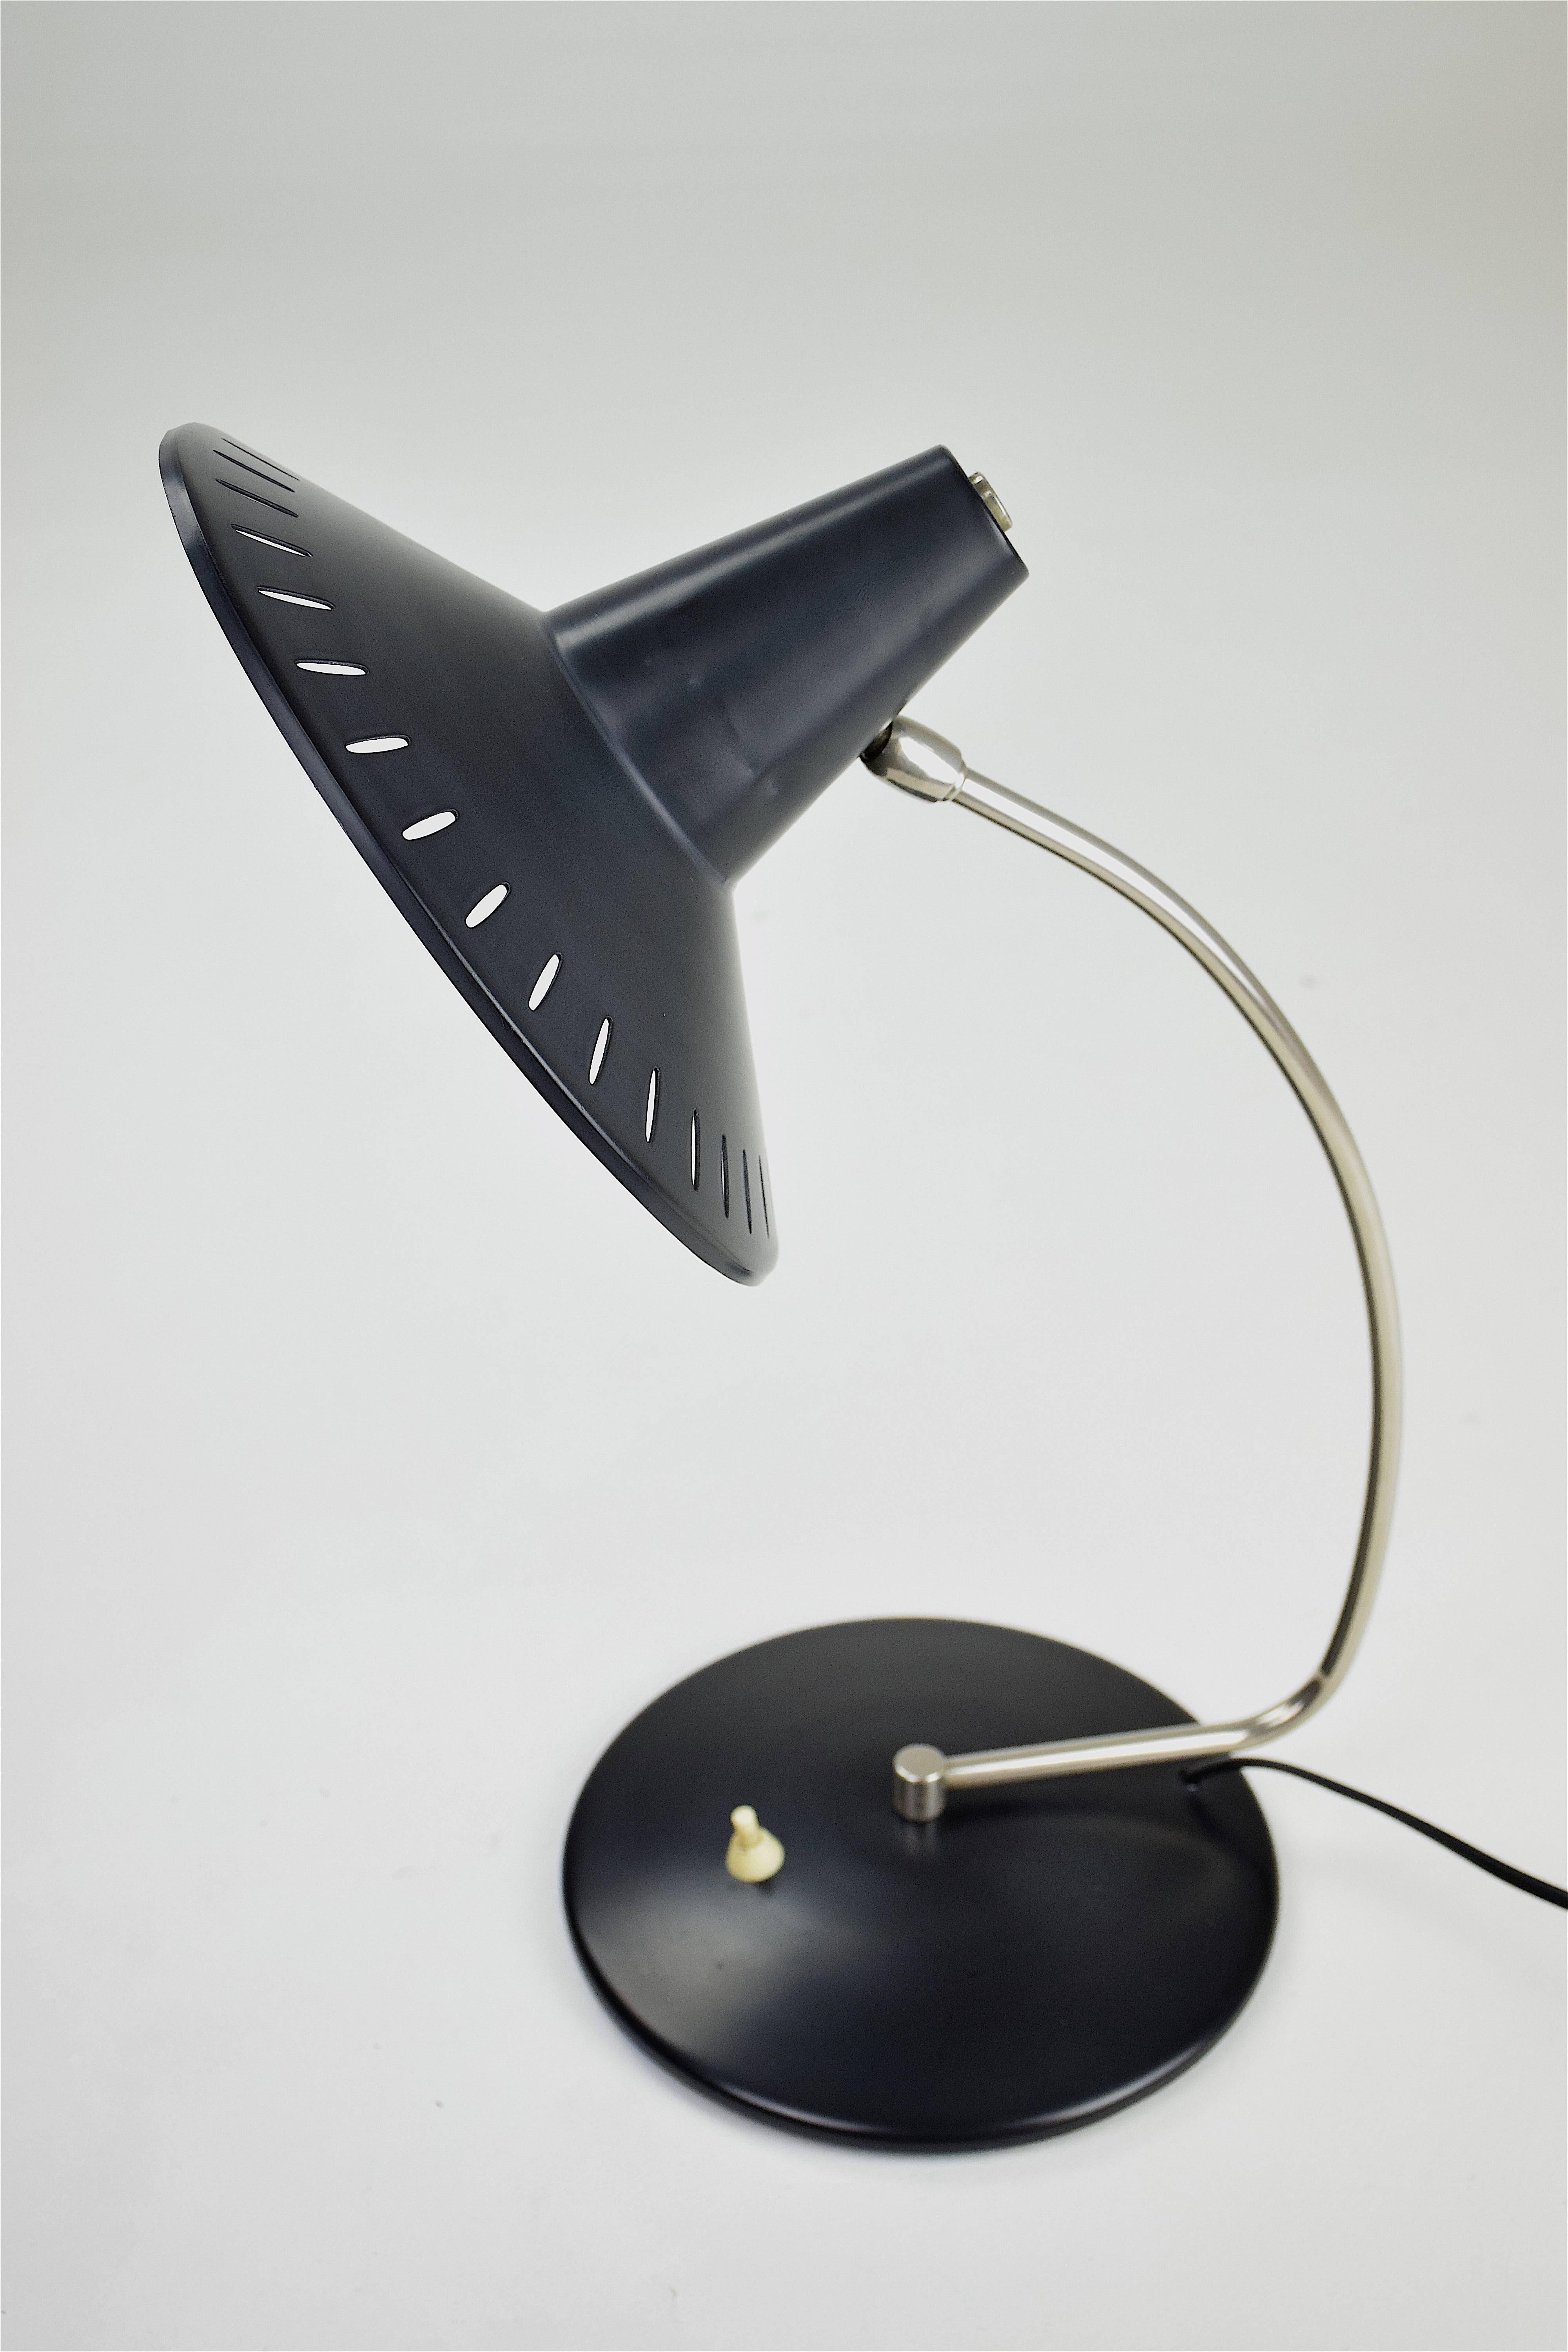 1950s desk lamp